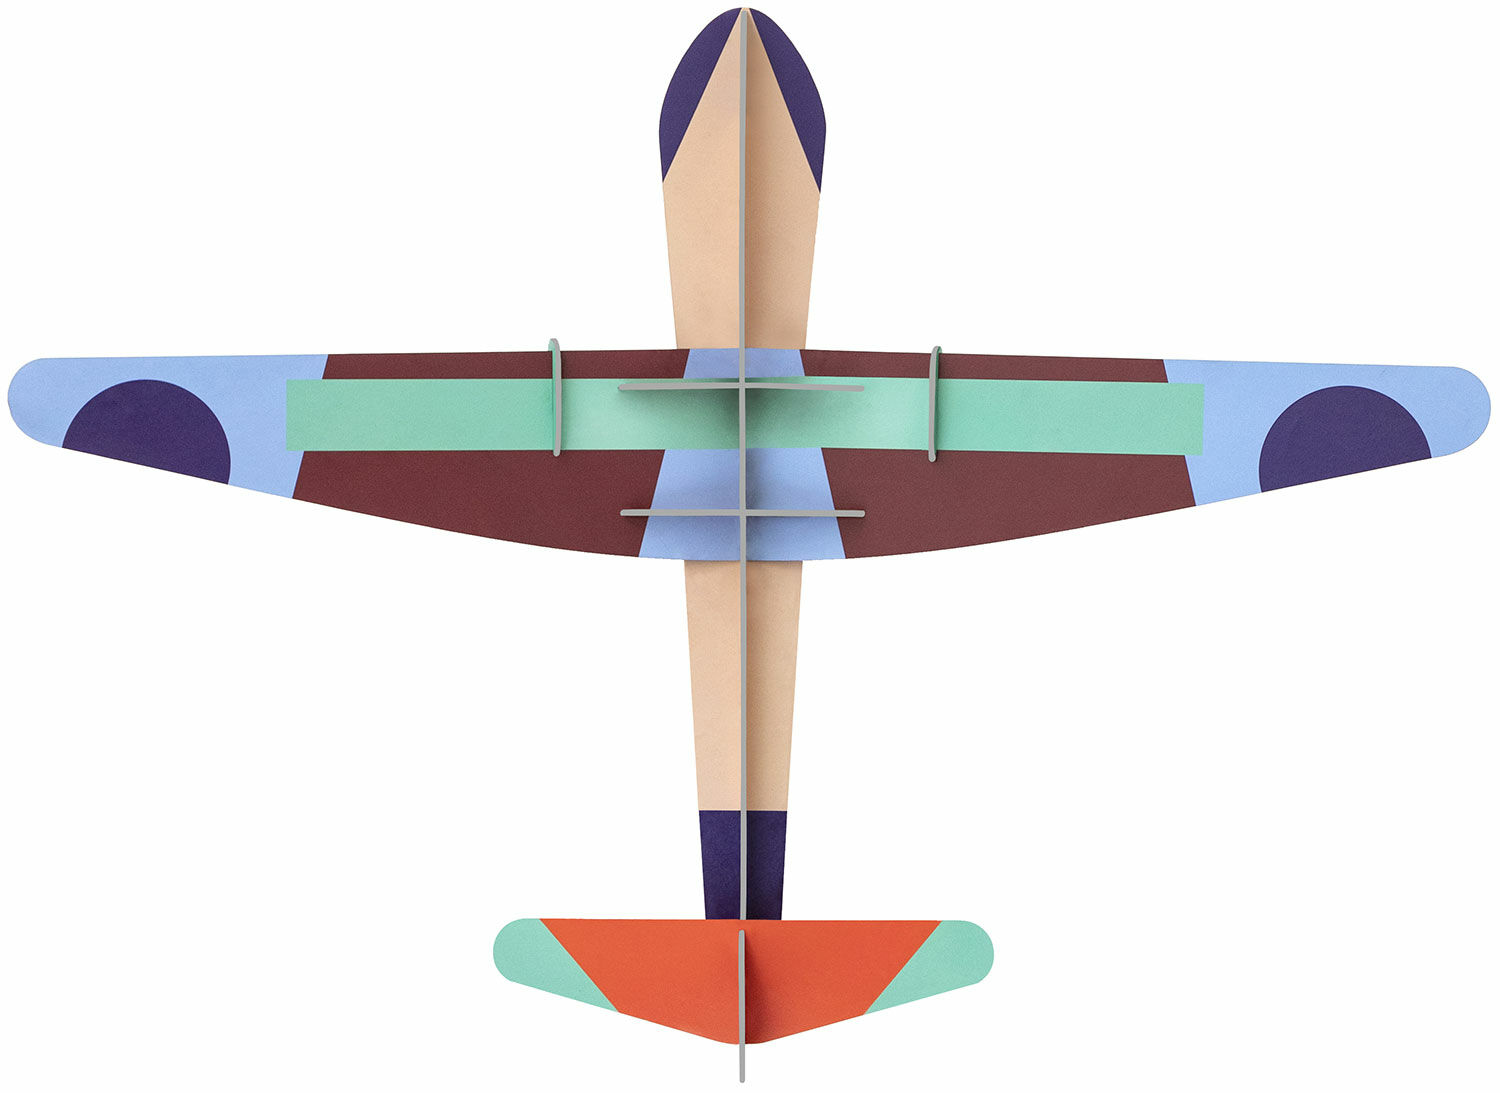 3D-vægobjekt "Deluxe Glider Plane" lavet af genbrugspap, DIY von studio ROOF